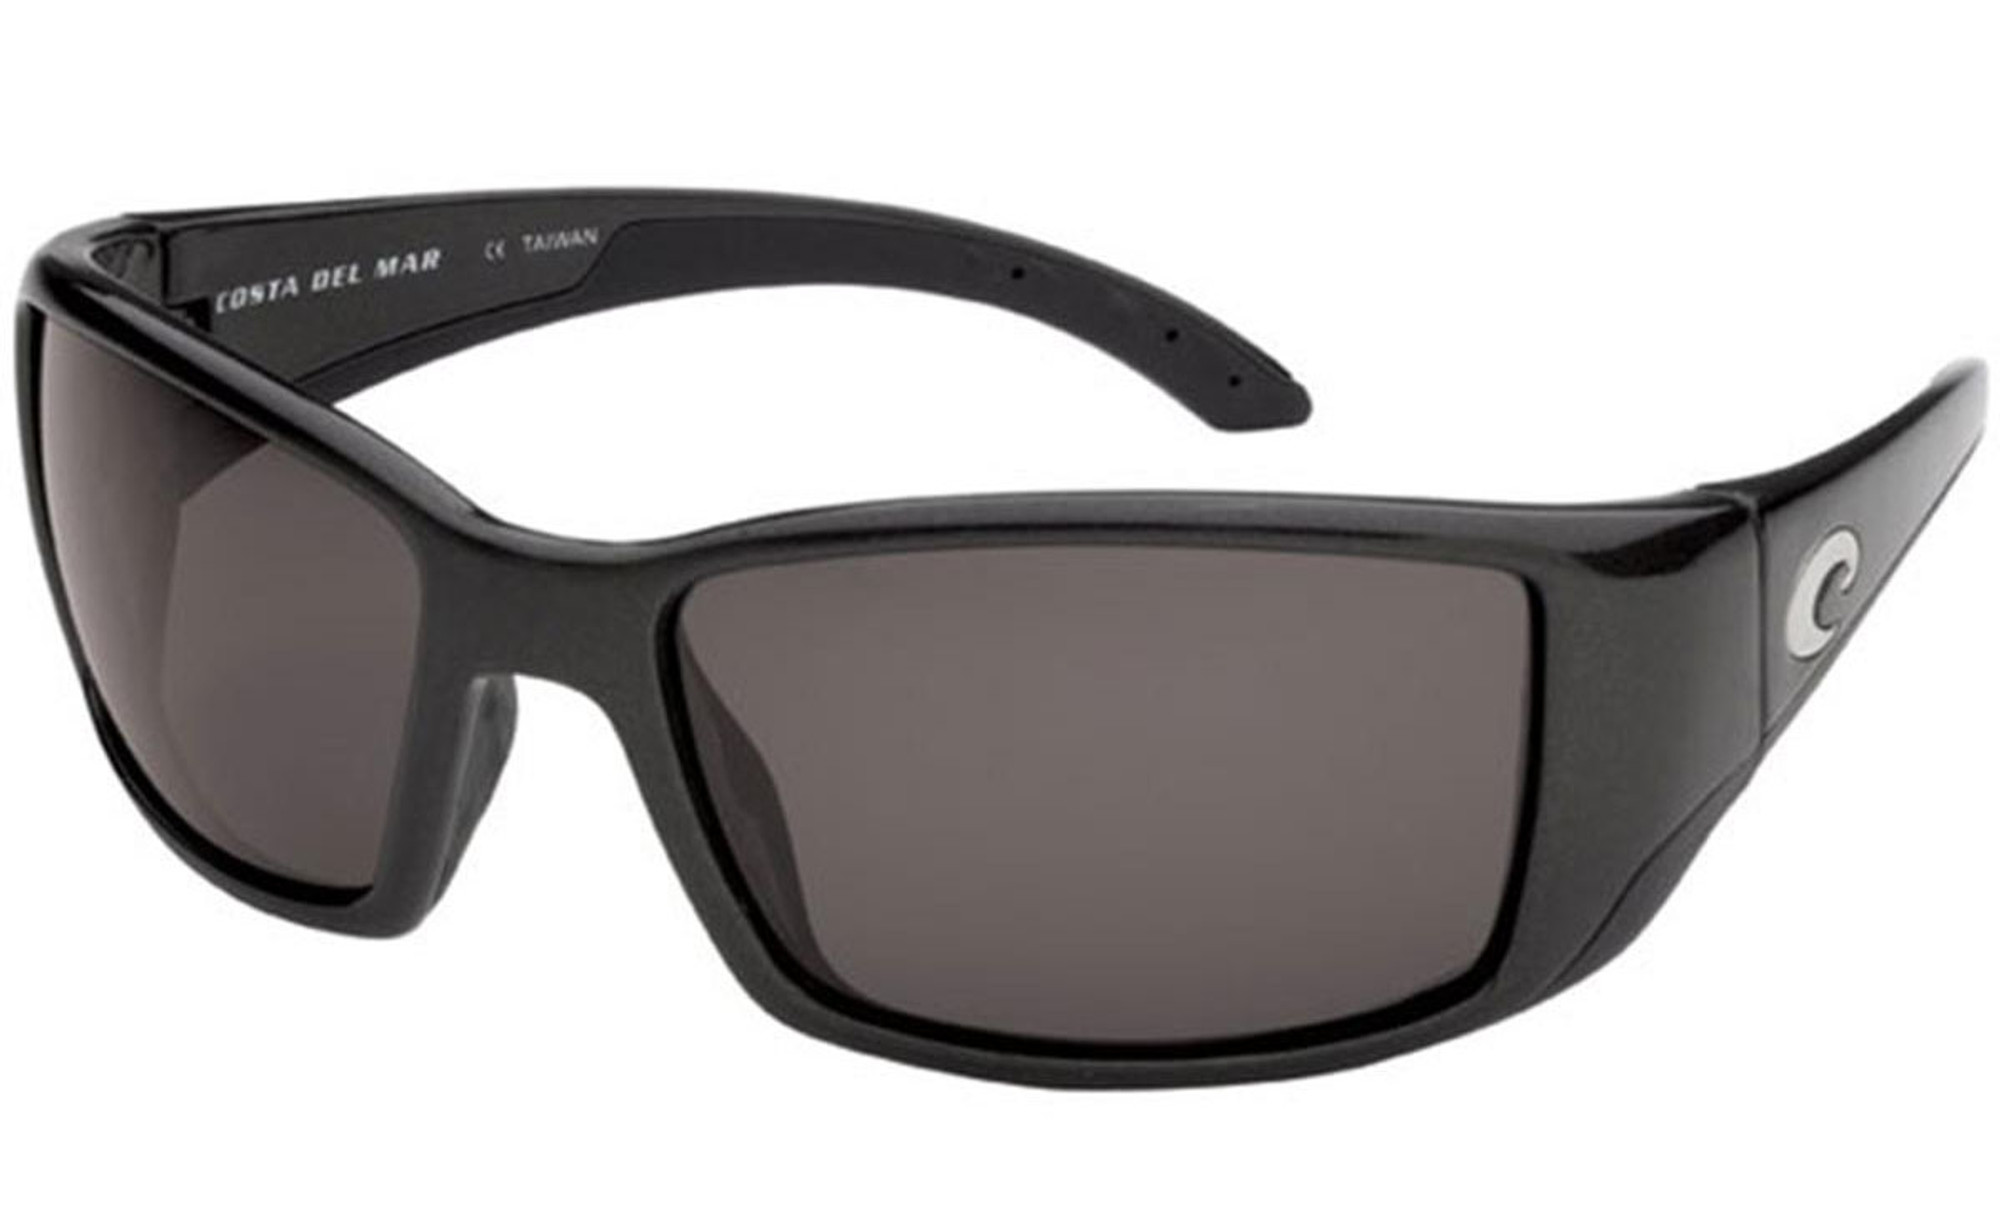 Costa Del Mar - Blackfin Polarized Sunglasses - Black / 580p Gray